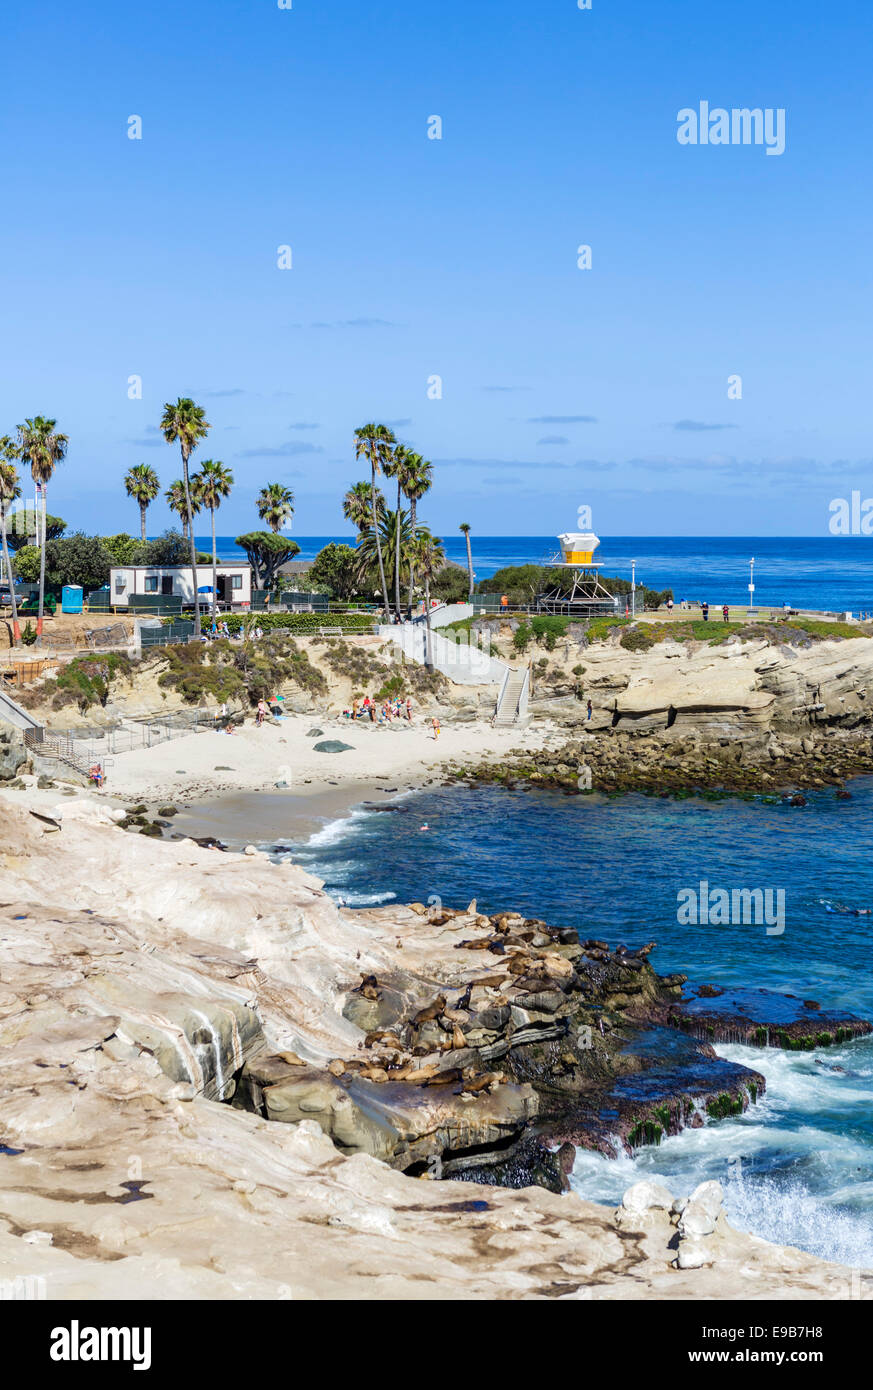 La playa de La Jolla Cove, La Jolla, el condado de San Diego, California, EE.UU. Foto de stock